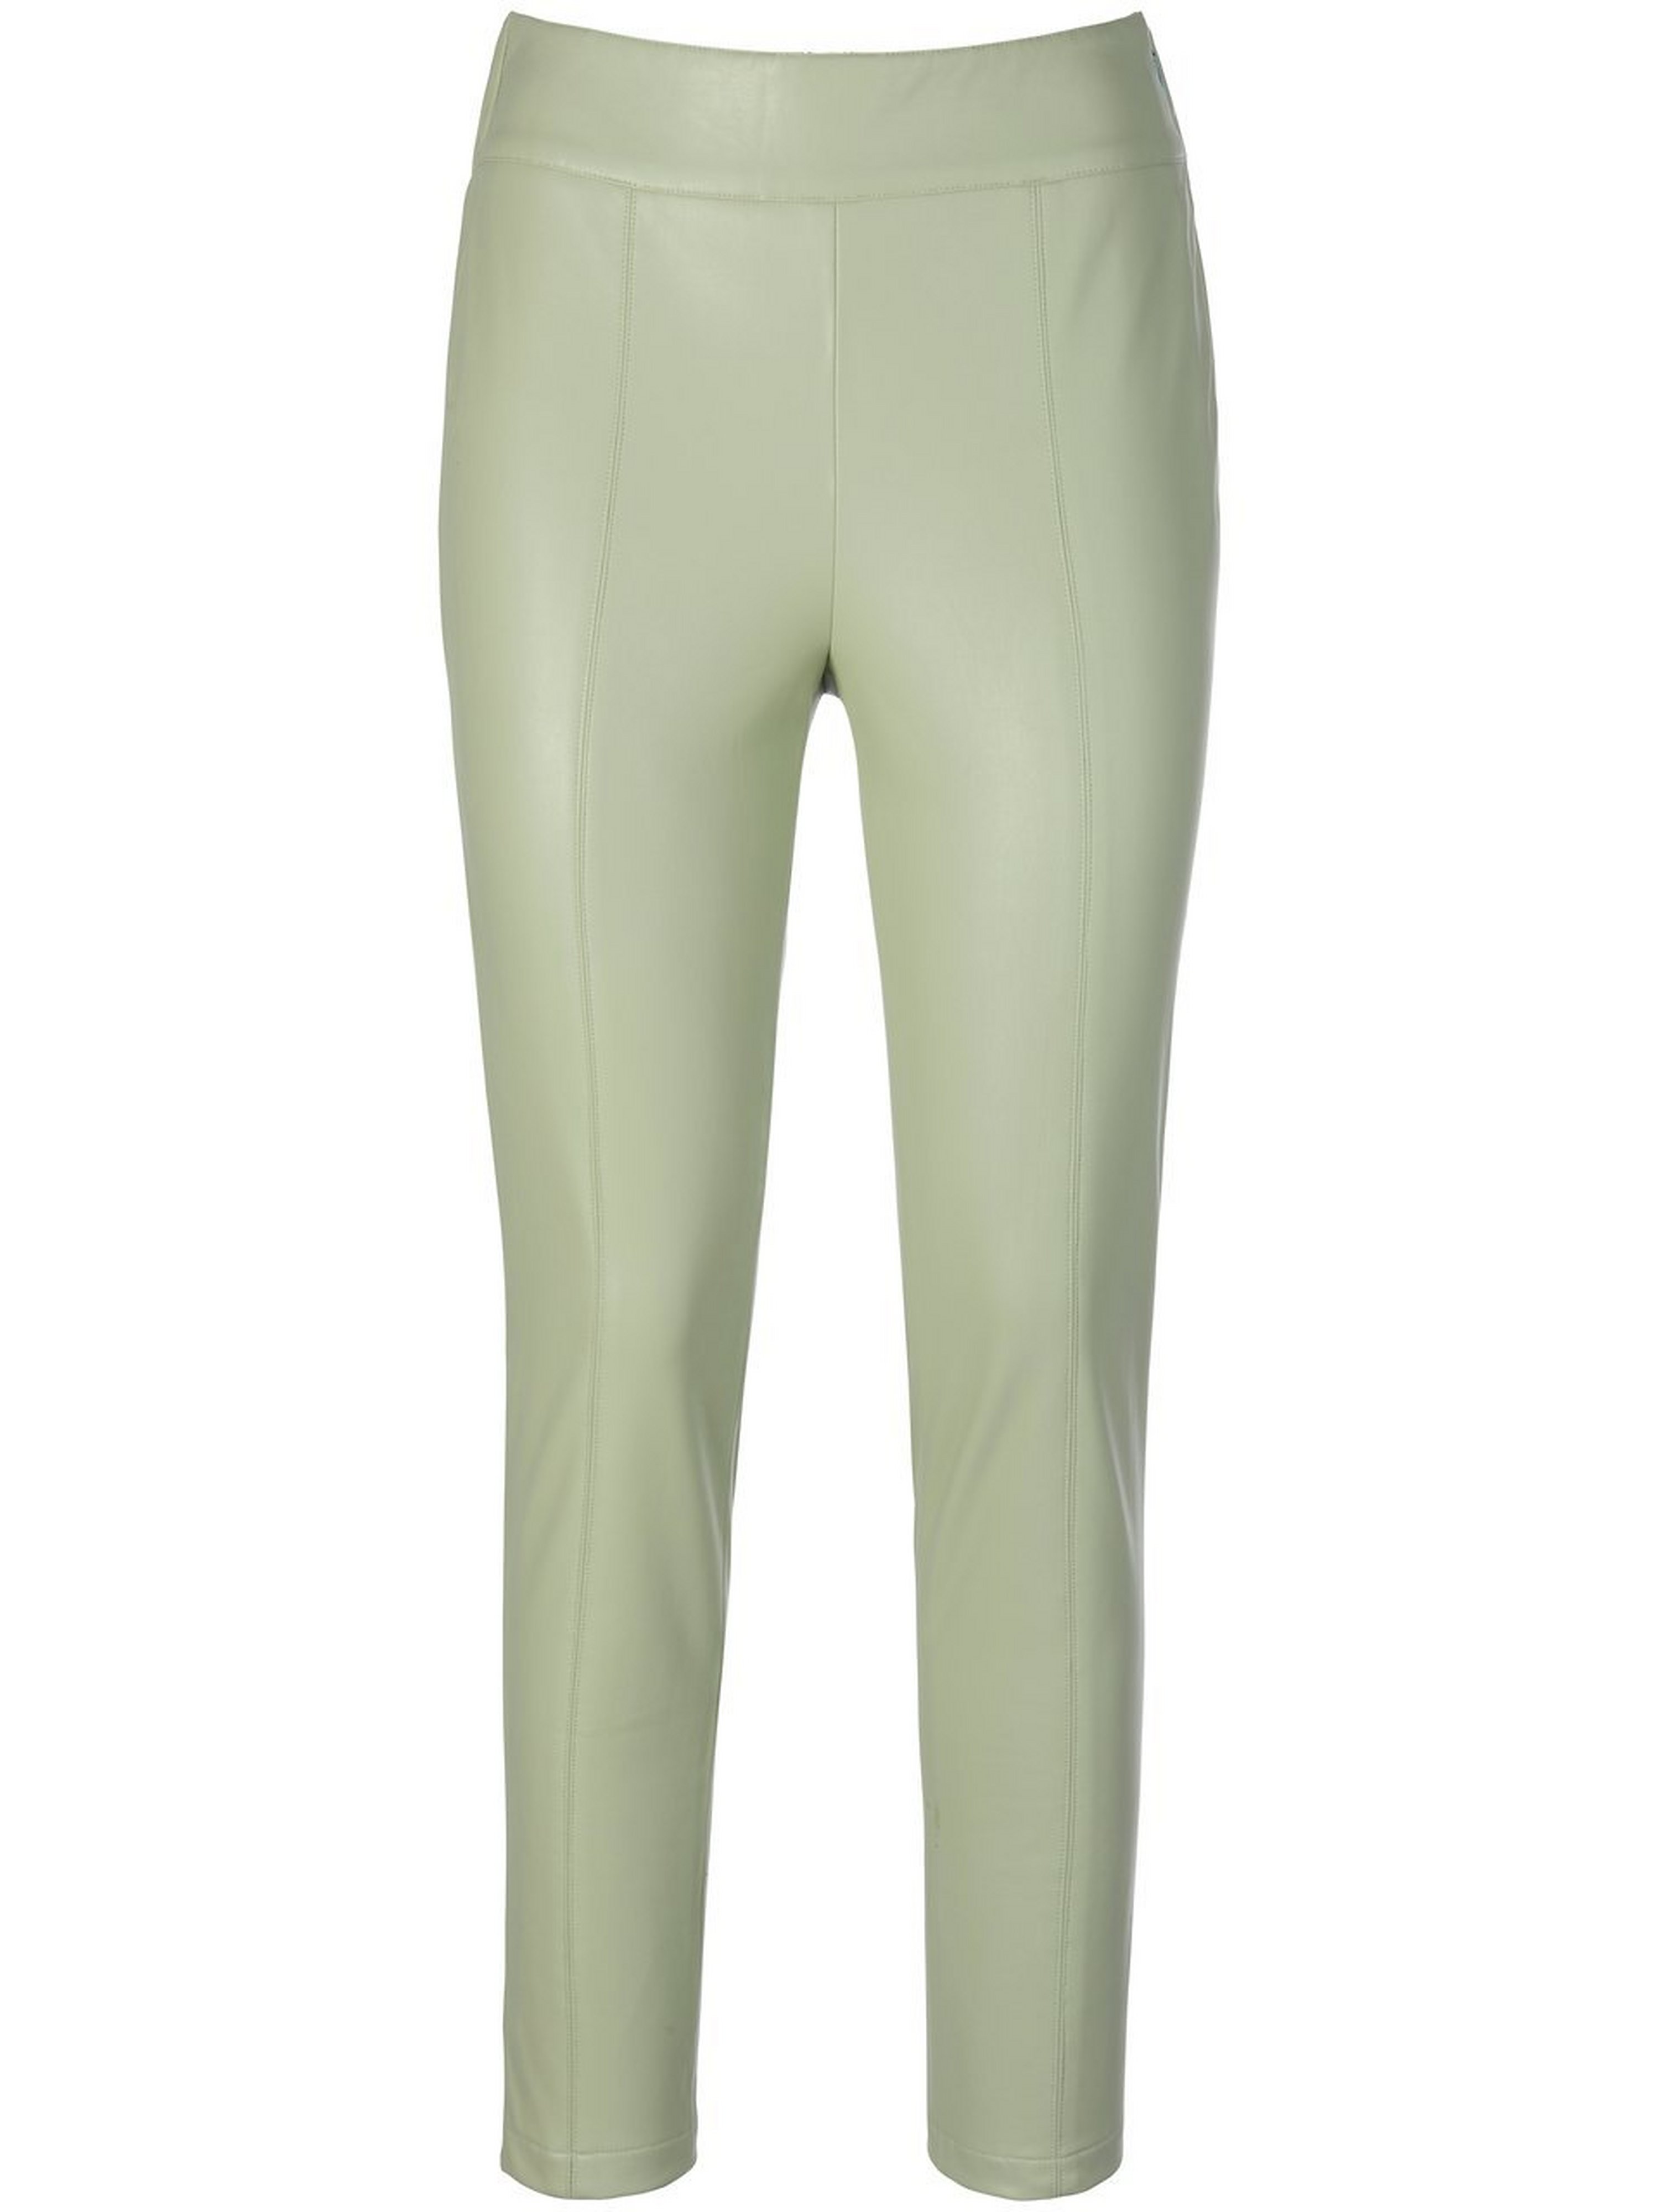 Le pantalon synthétique  BASLER vert taille 52